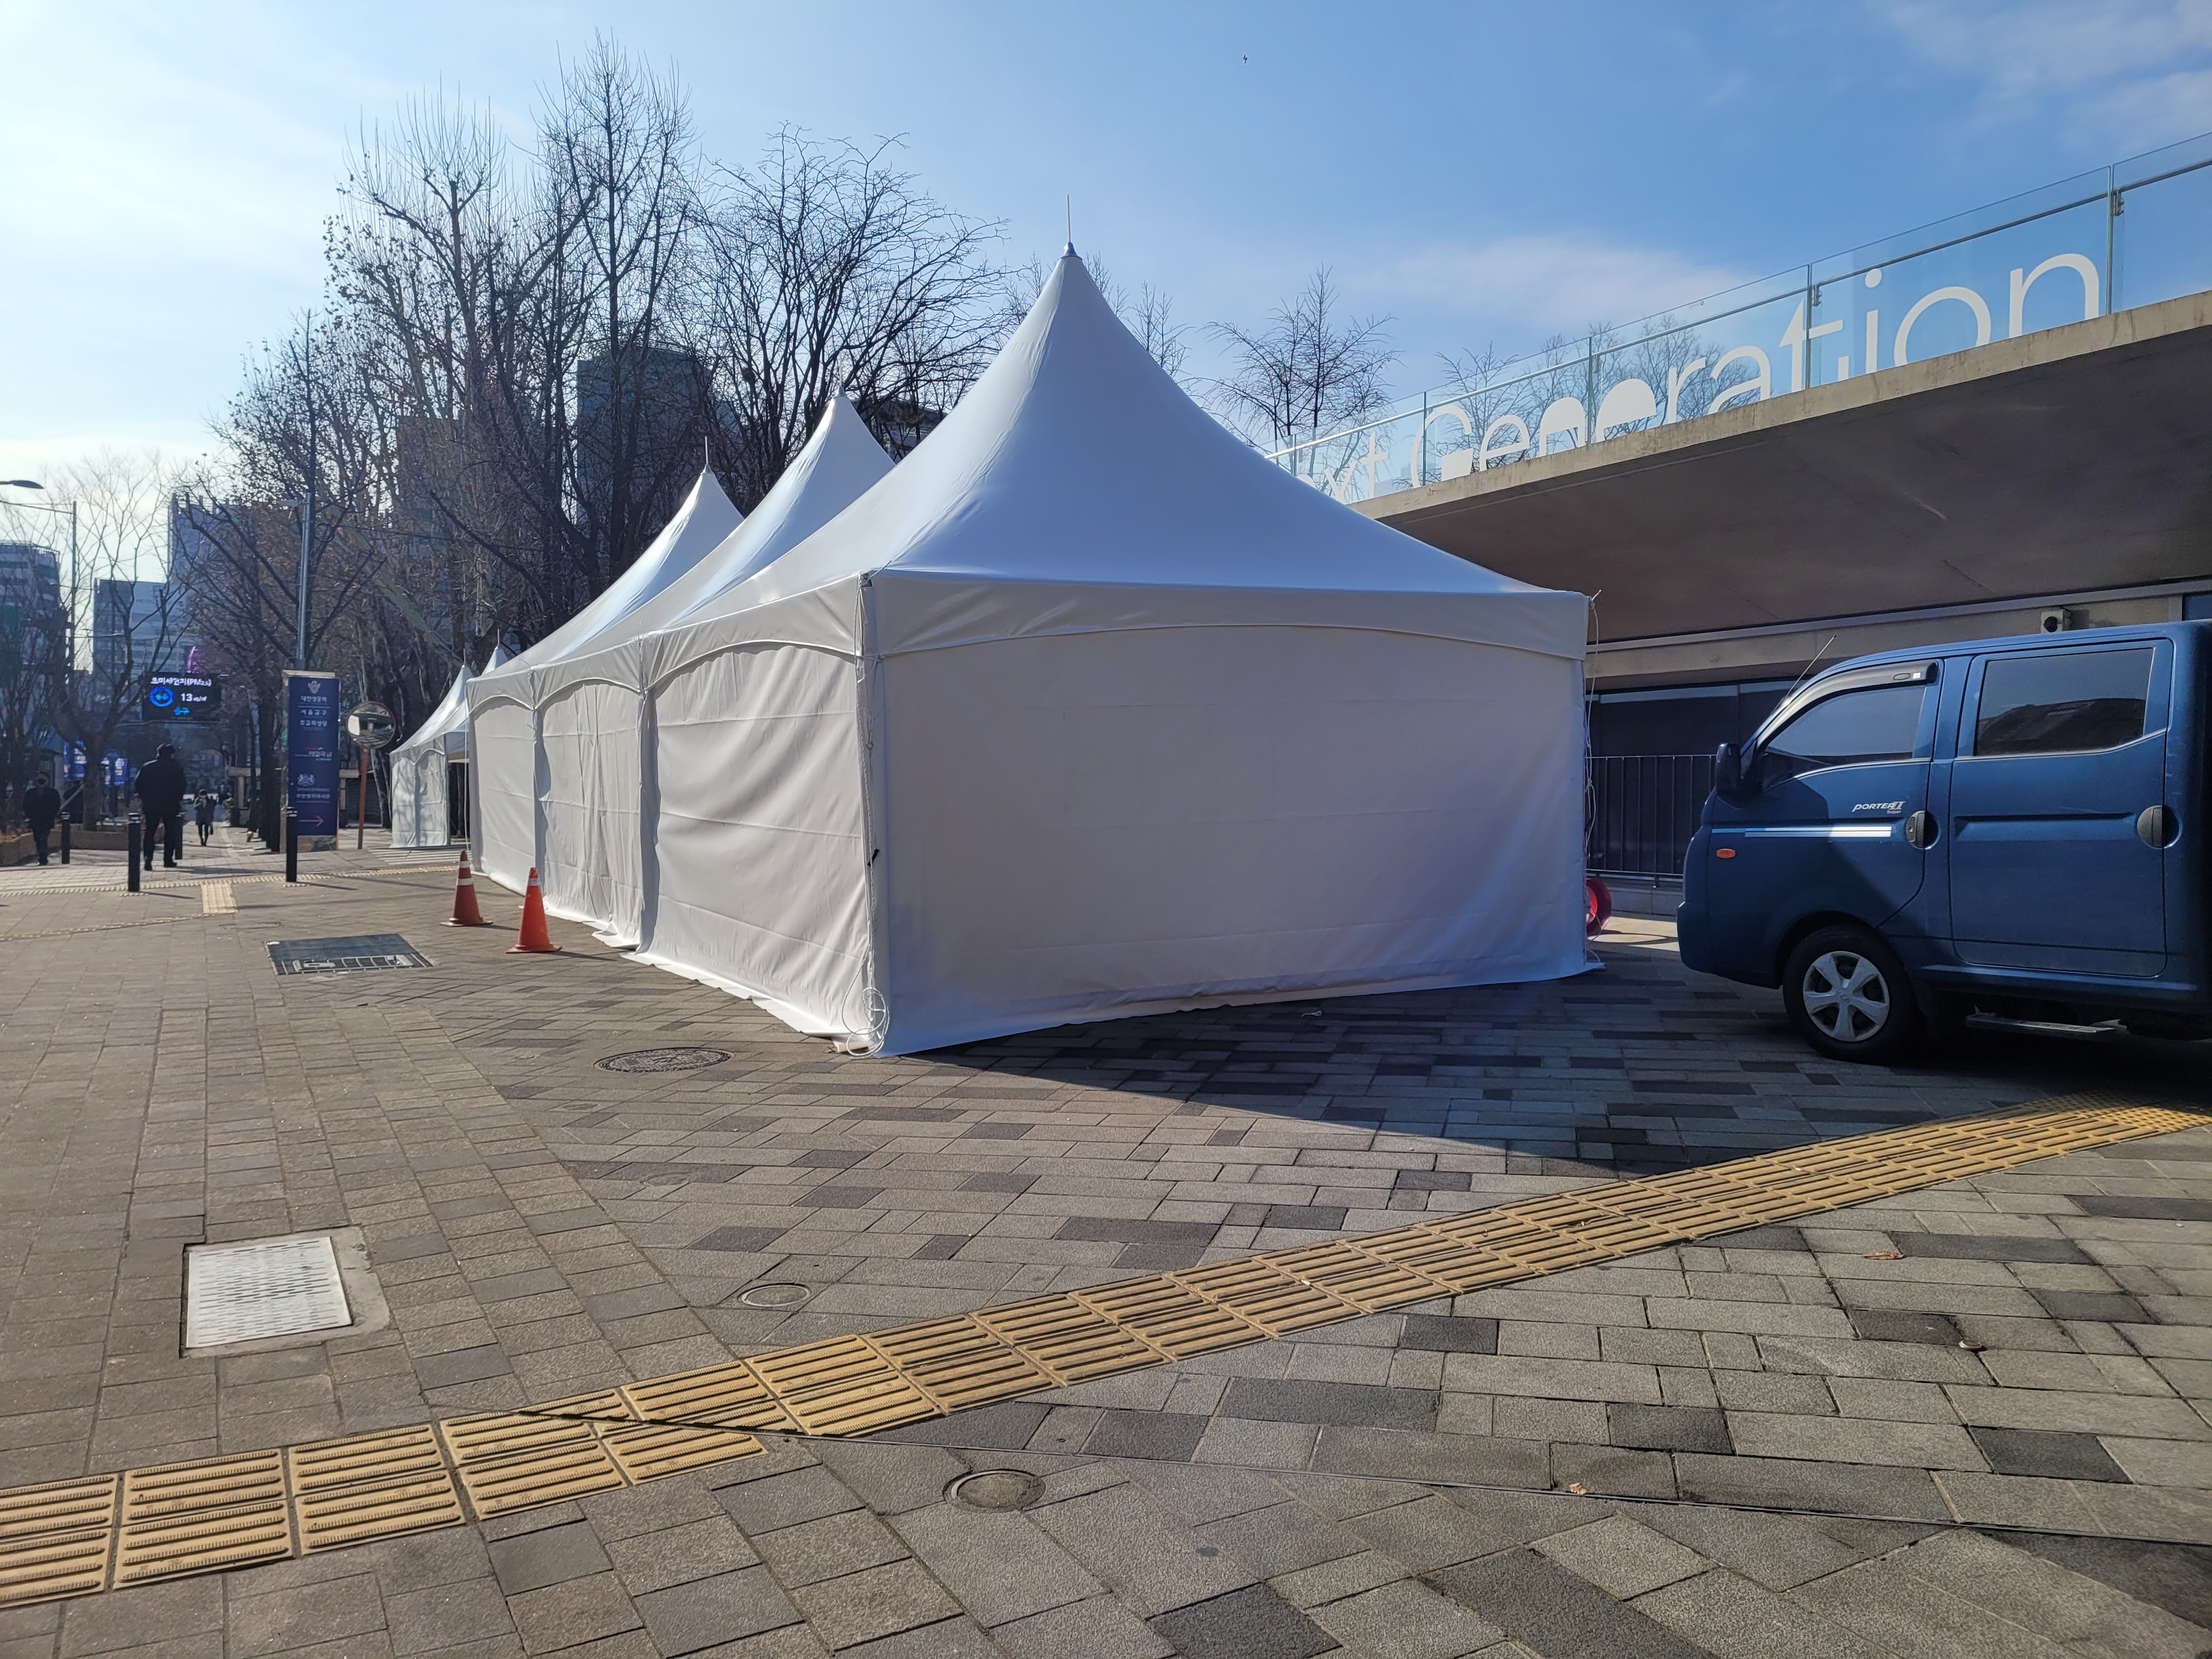 코로나19 진상규명 시민연대가 지난 23일부터 서울 중구 서울시의회 앞 도로에 설치한 천막 5동의 모습. 시민연대는 3동은 추모 분향소, 2동은 피해자 가족 휴게공간으로 마련할 계획이라고 밝혔다.